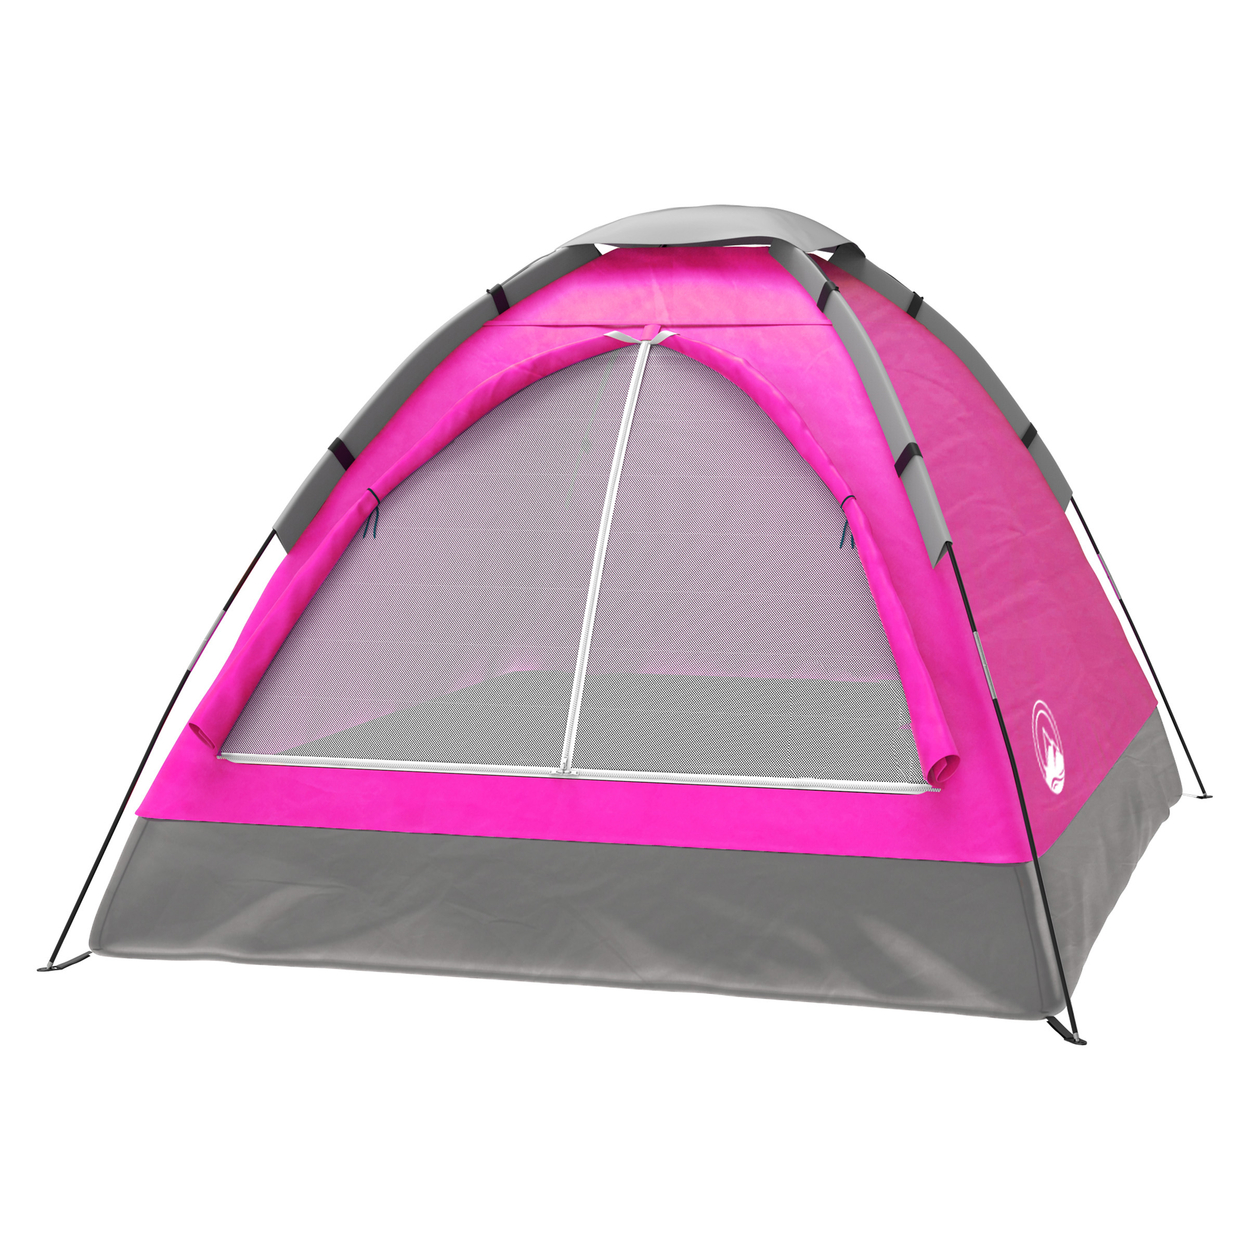 Backyard Princess Pink Camping Tent Outdoor Playhouse Slumber Party Sleep Over